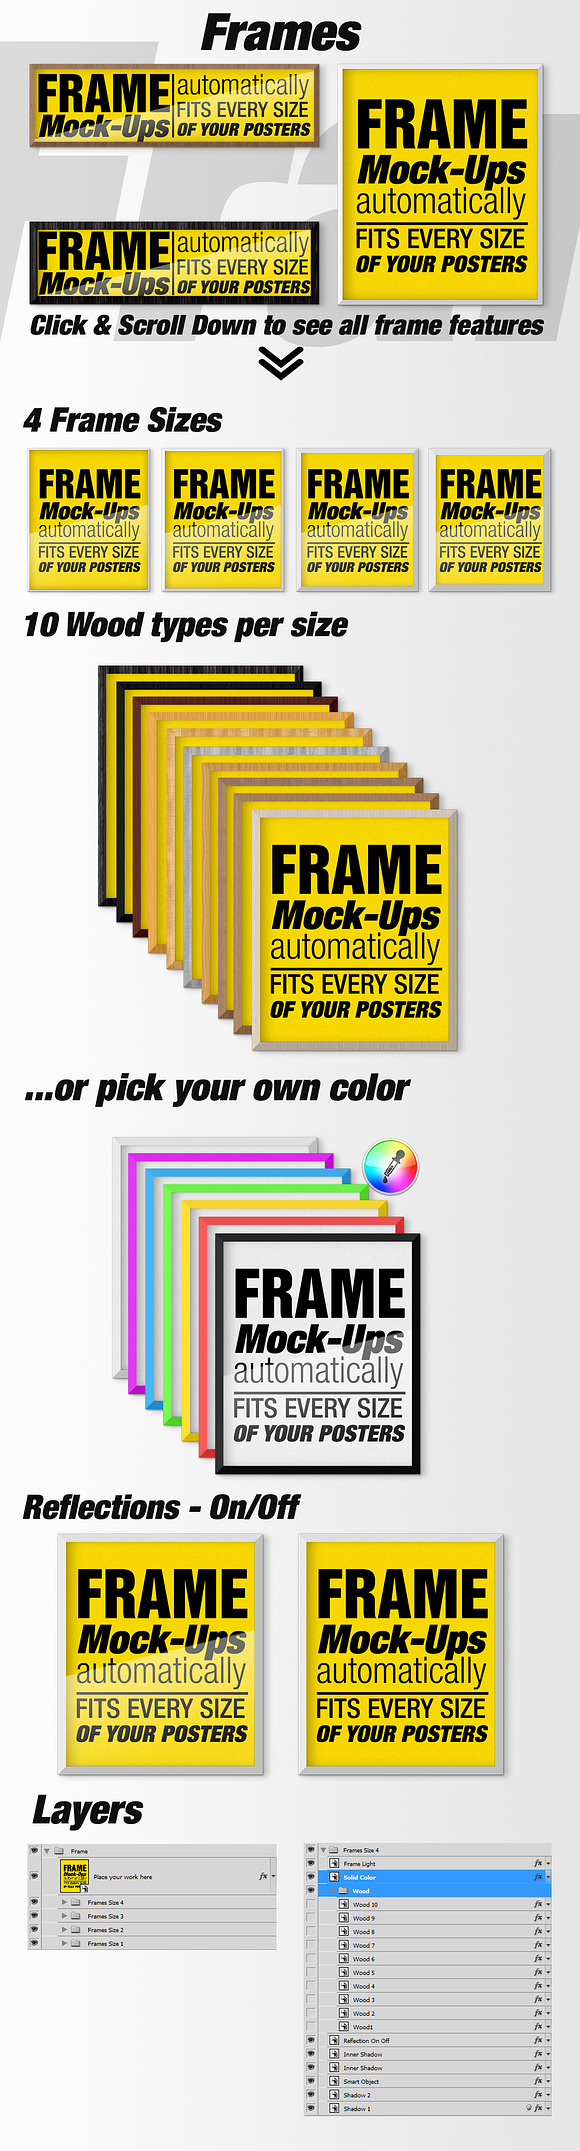 Canvas Mockups - Frames Mockups v 4 in Print Mockups - product preview 2